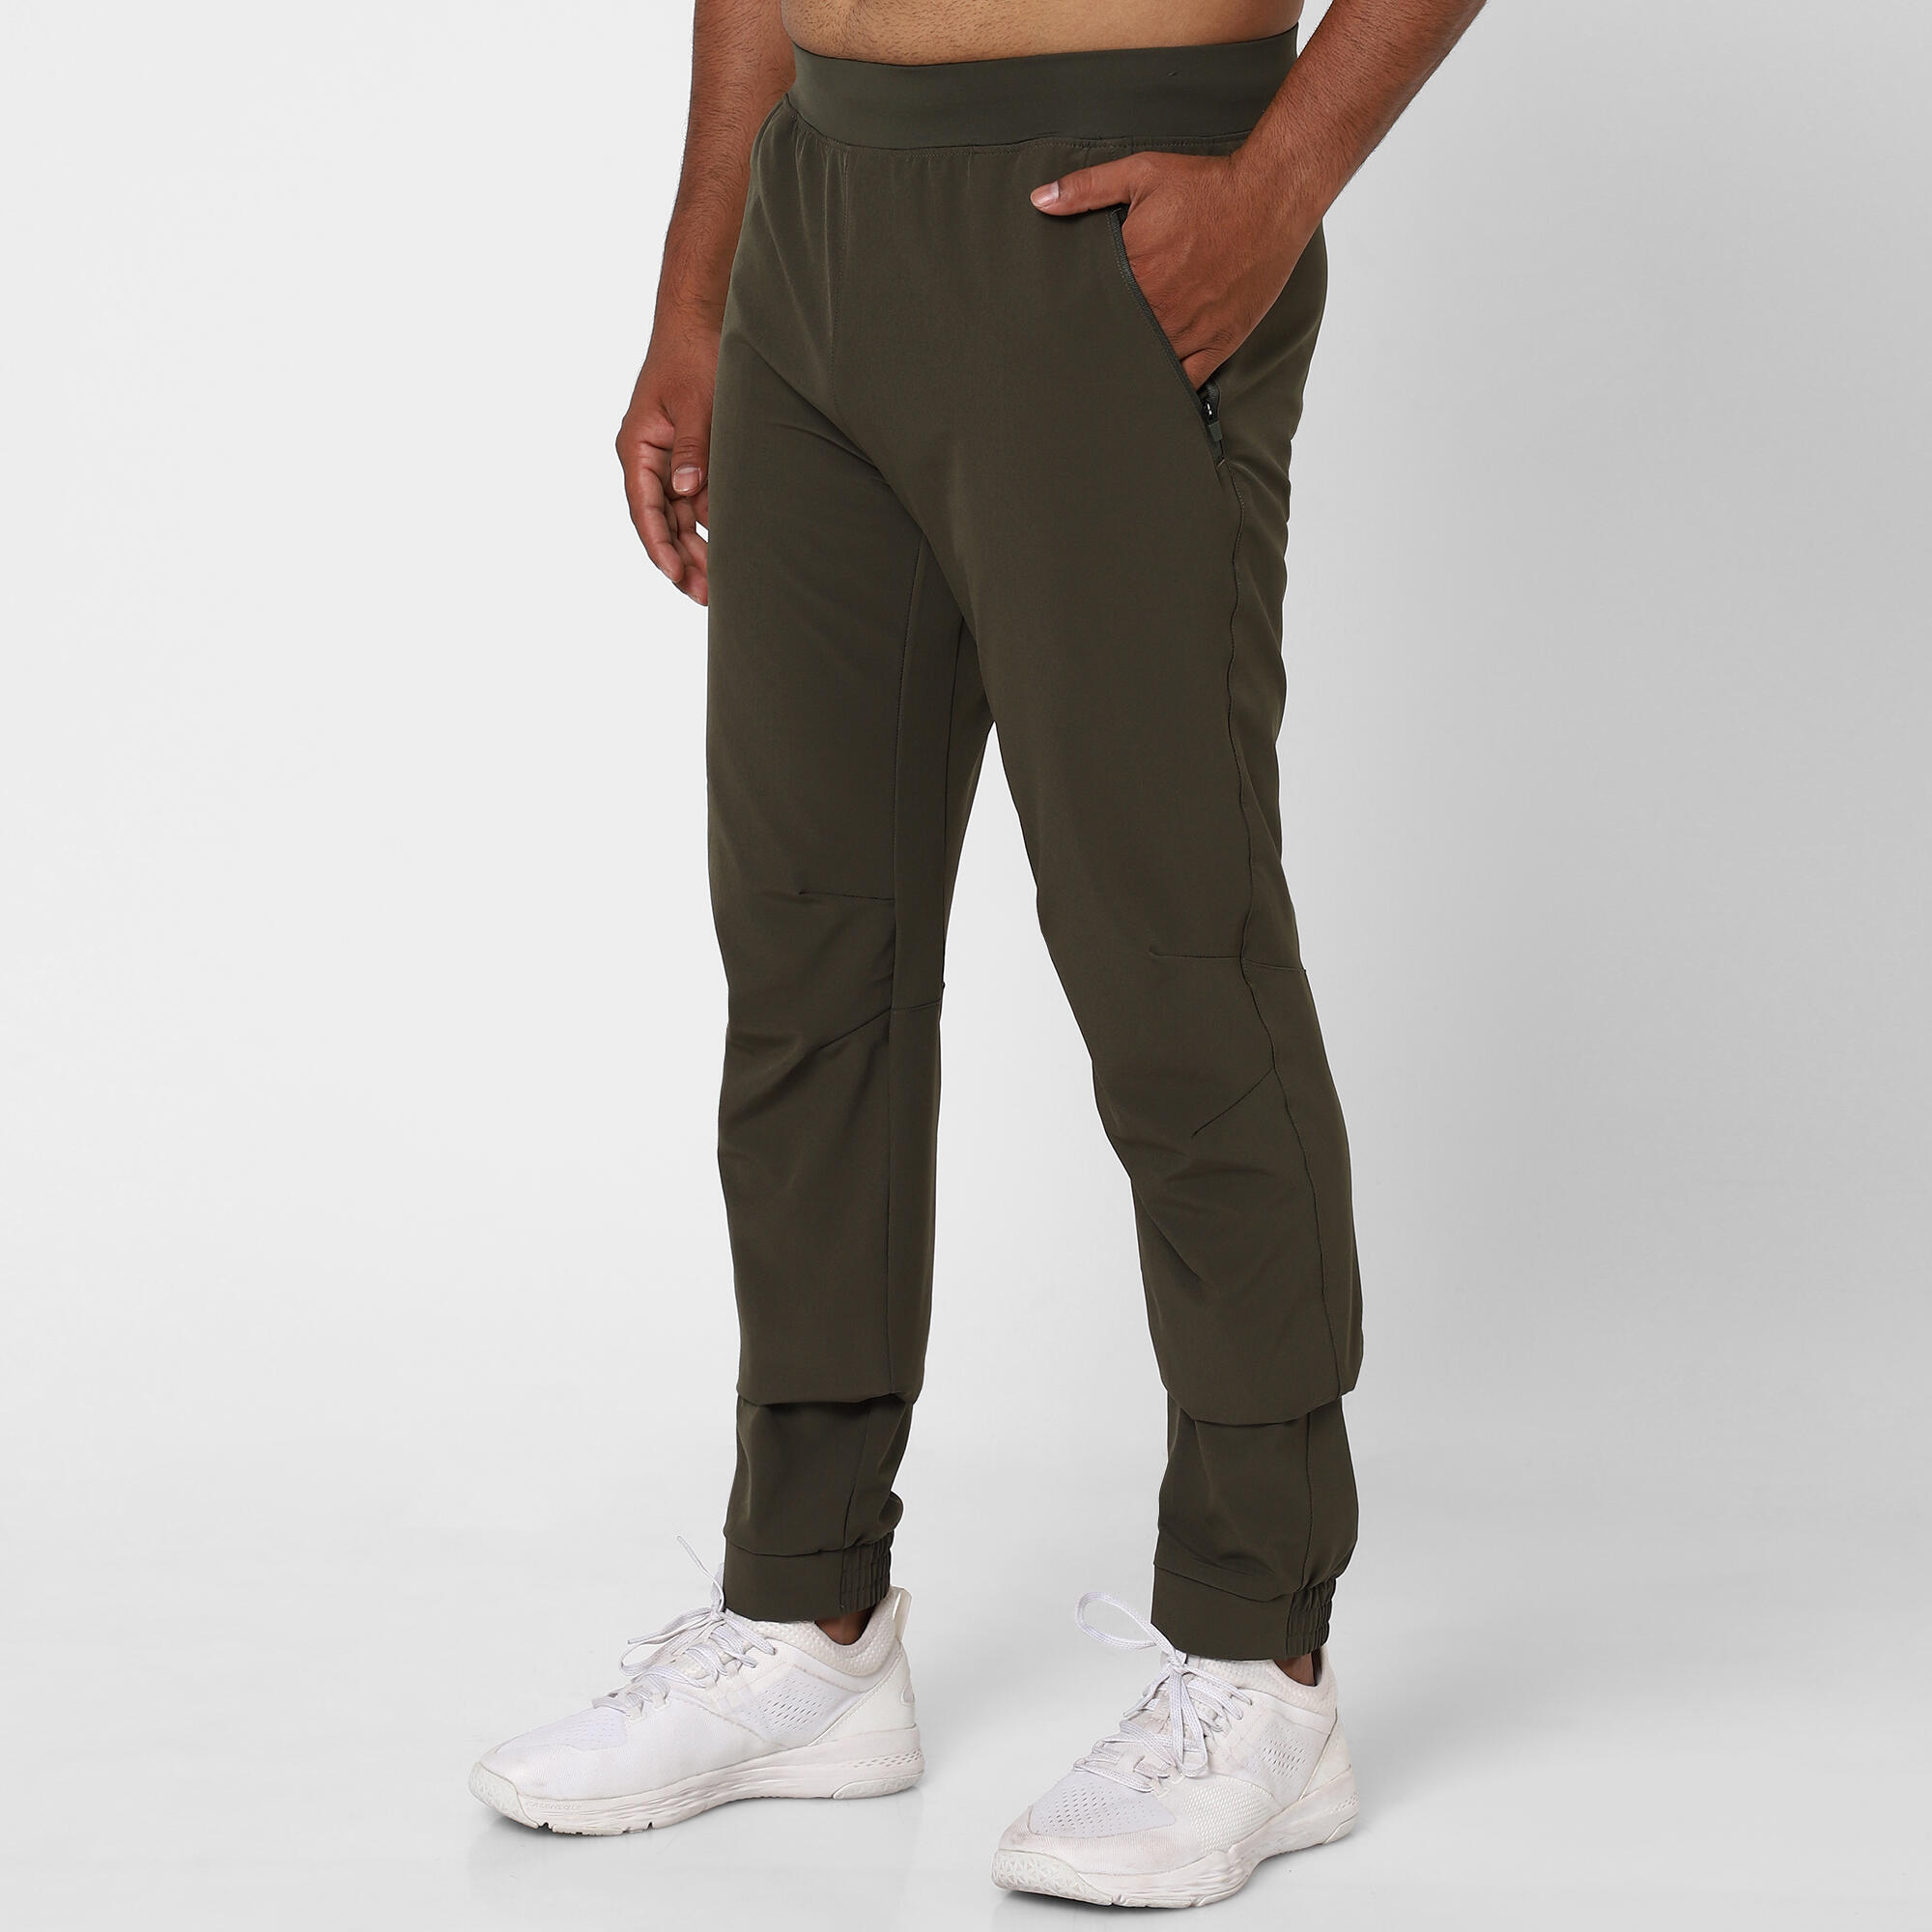 Buy Grey Trousers  Pants for Women by NIKE Online  Ajiocom